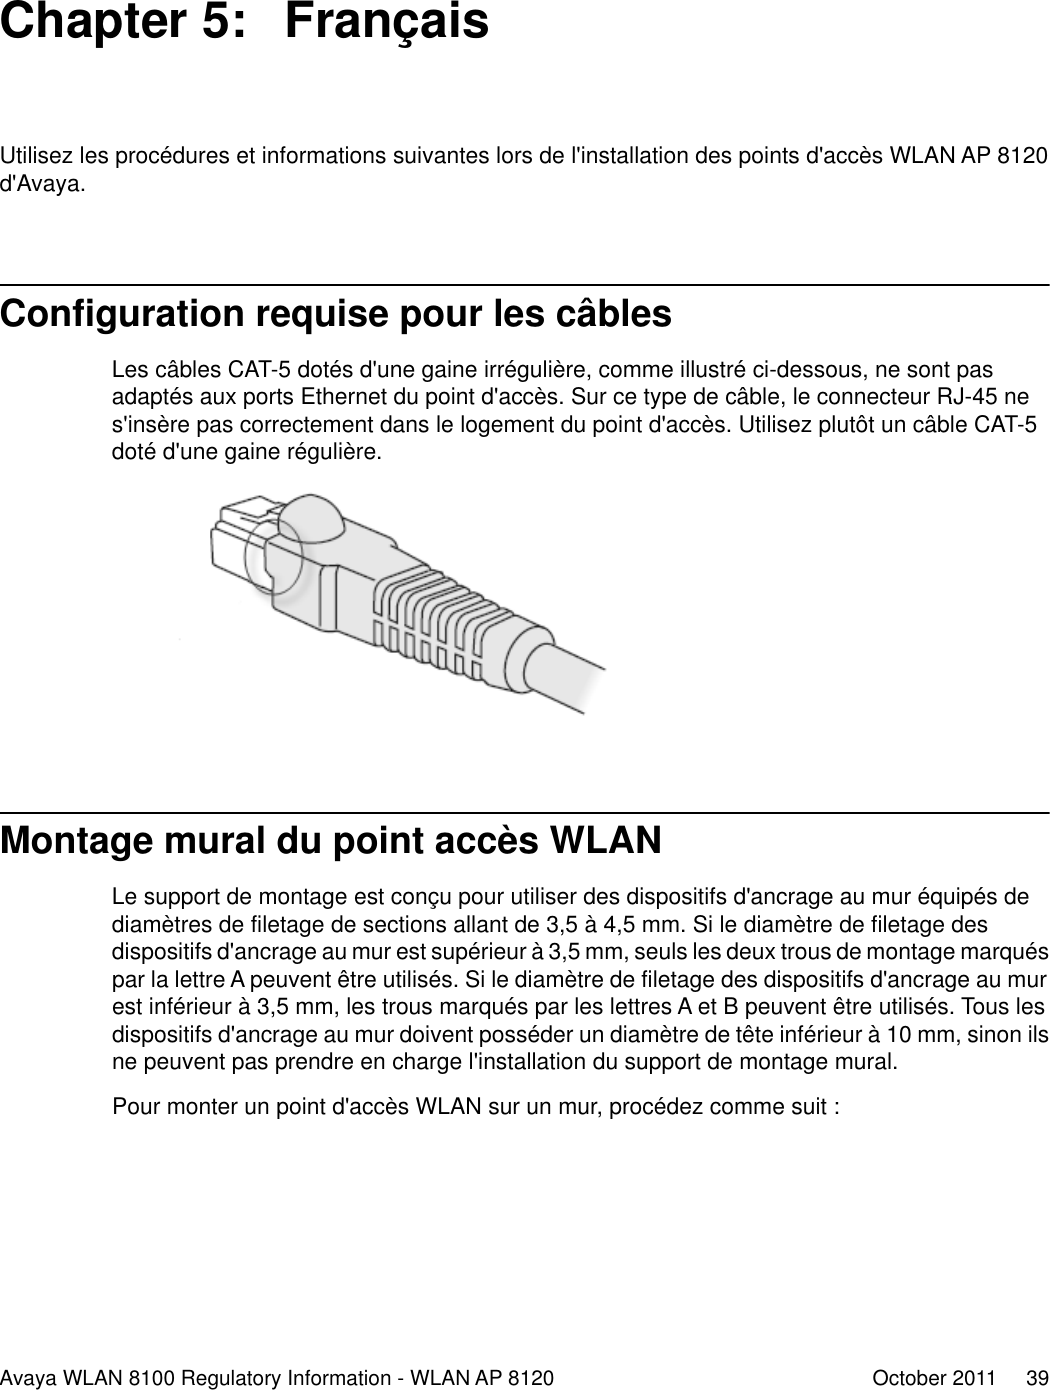 Chapter 5:  FrançaisUtilisez les procédures et informations suivantes lors de l&apos;installation des points d&apos;accès WLAN AP 8120d&apos;Avaya.Configuration requise pour les câblesLes câbles CAT-5 dotés d&apos;une gaine irrégulière, comme illustré ci-dessous, ne sont pasadaptés aux ports Ethernet du point d&apos;accès. Sur ce type de câble, le connecteur RJ-45 nes&apos;insère pas correctement dans le logement du point d&apos;accès. Utilisez plutôt un câble CAT-5doté d&apos;une gaine régulière.Montage mural du point accès WLANLe support de montage est conçu pour utiliser des dispositifs d&apos;ancrage au mur équipés dediamètres de filetage de sections allant de 3,5 à 4,5 mm. Si le diamètre de filetage desdispositifs d&apos;ancrage au mur est supérieur à 3,5 mm, seuls les deux trous de montage marquéspar la lettre A peuvent être utilisés. Si le diamètre de filetage des dispositifs d&apos;ancrage au murest inférieur à 3,5 mm, les trous marqués par les lettres A et B peuvent être utilisés. Tous lesdispositifs d&apos;ancrage au mur doivent posséder un diamètre de tête inférieur à 10 mm, sinon ilsne peuvent pas prendre en charge l&apos;installation du support de montage mural.Pour monter un point d&apos;accès WLAN sur un mur, procédez comme suit :Avaya WLAN 8100 Regulatory Information - WLAN AP 8120 October 2011     39